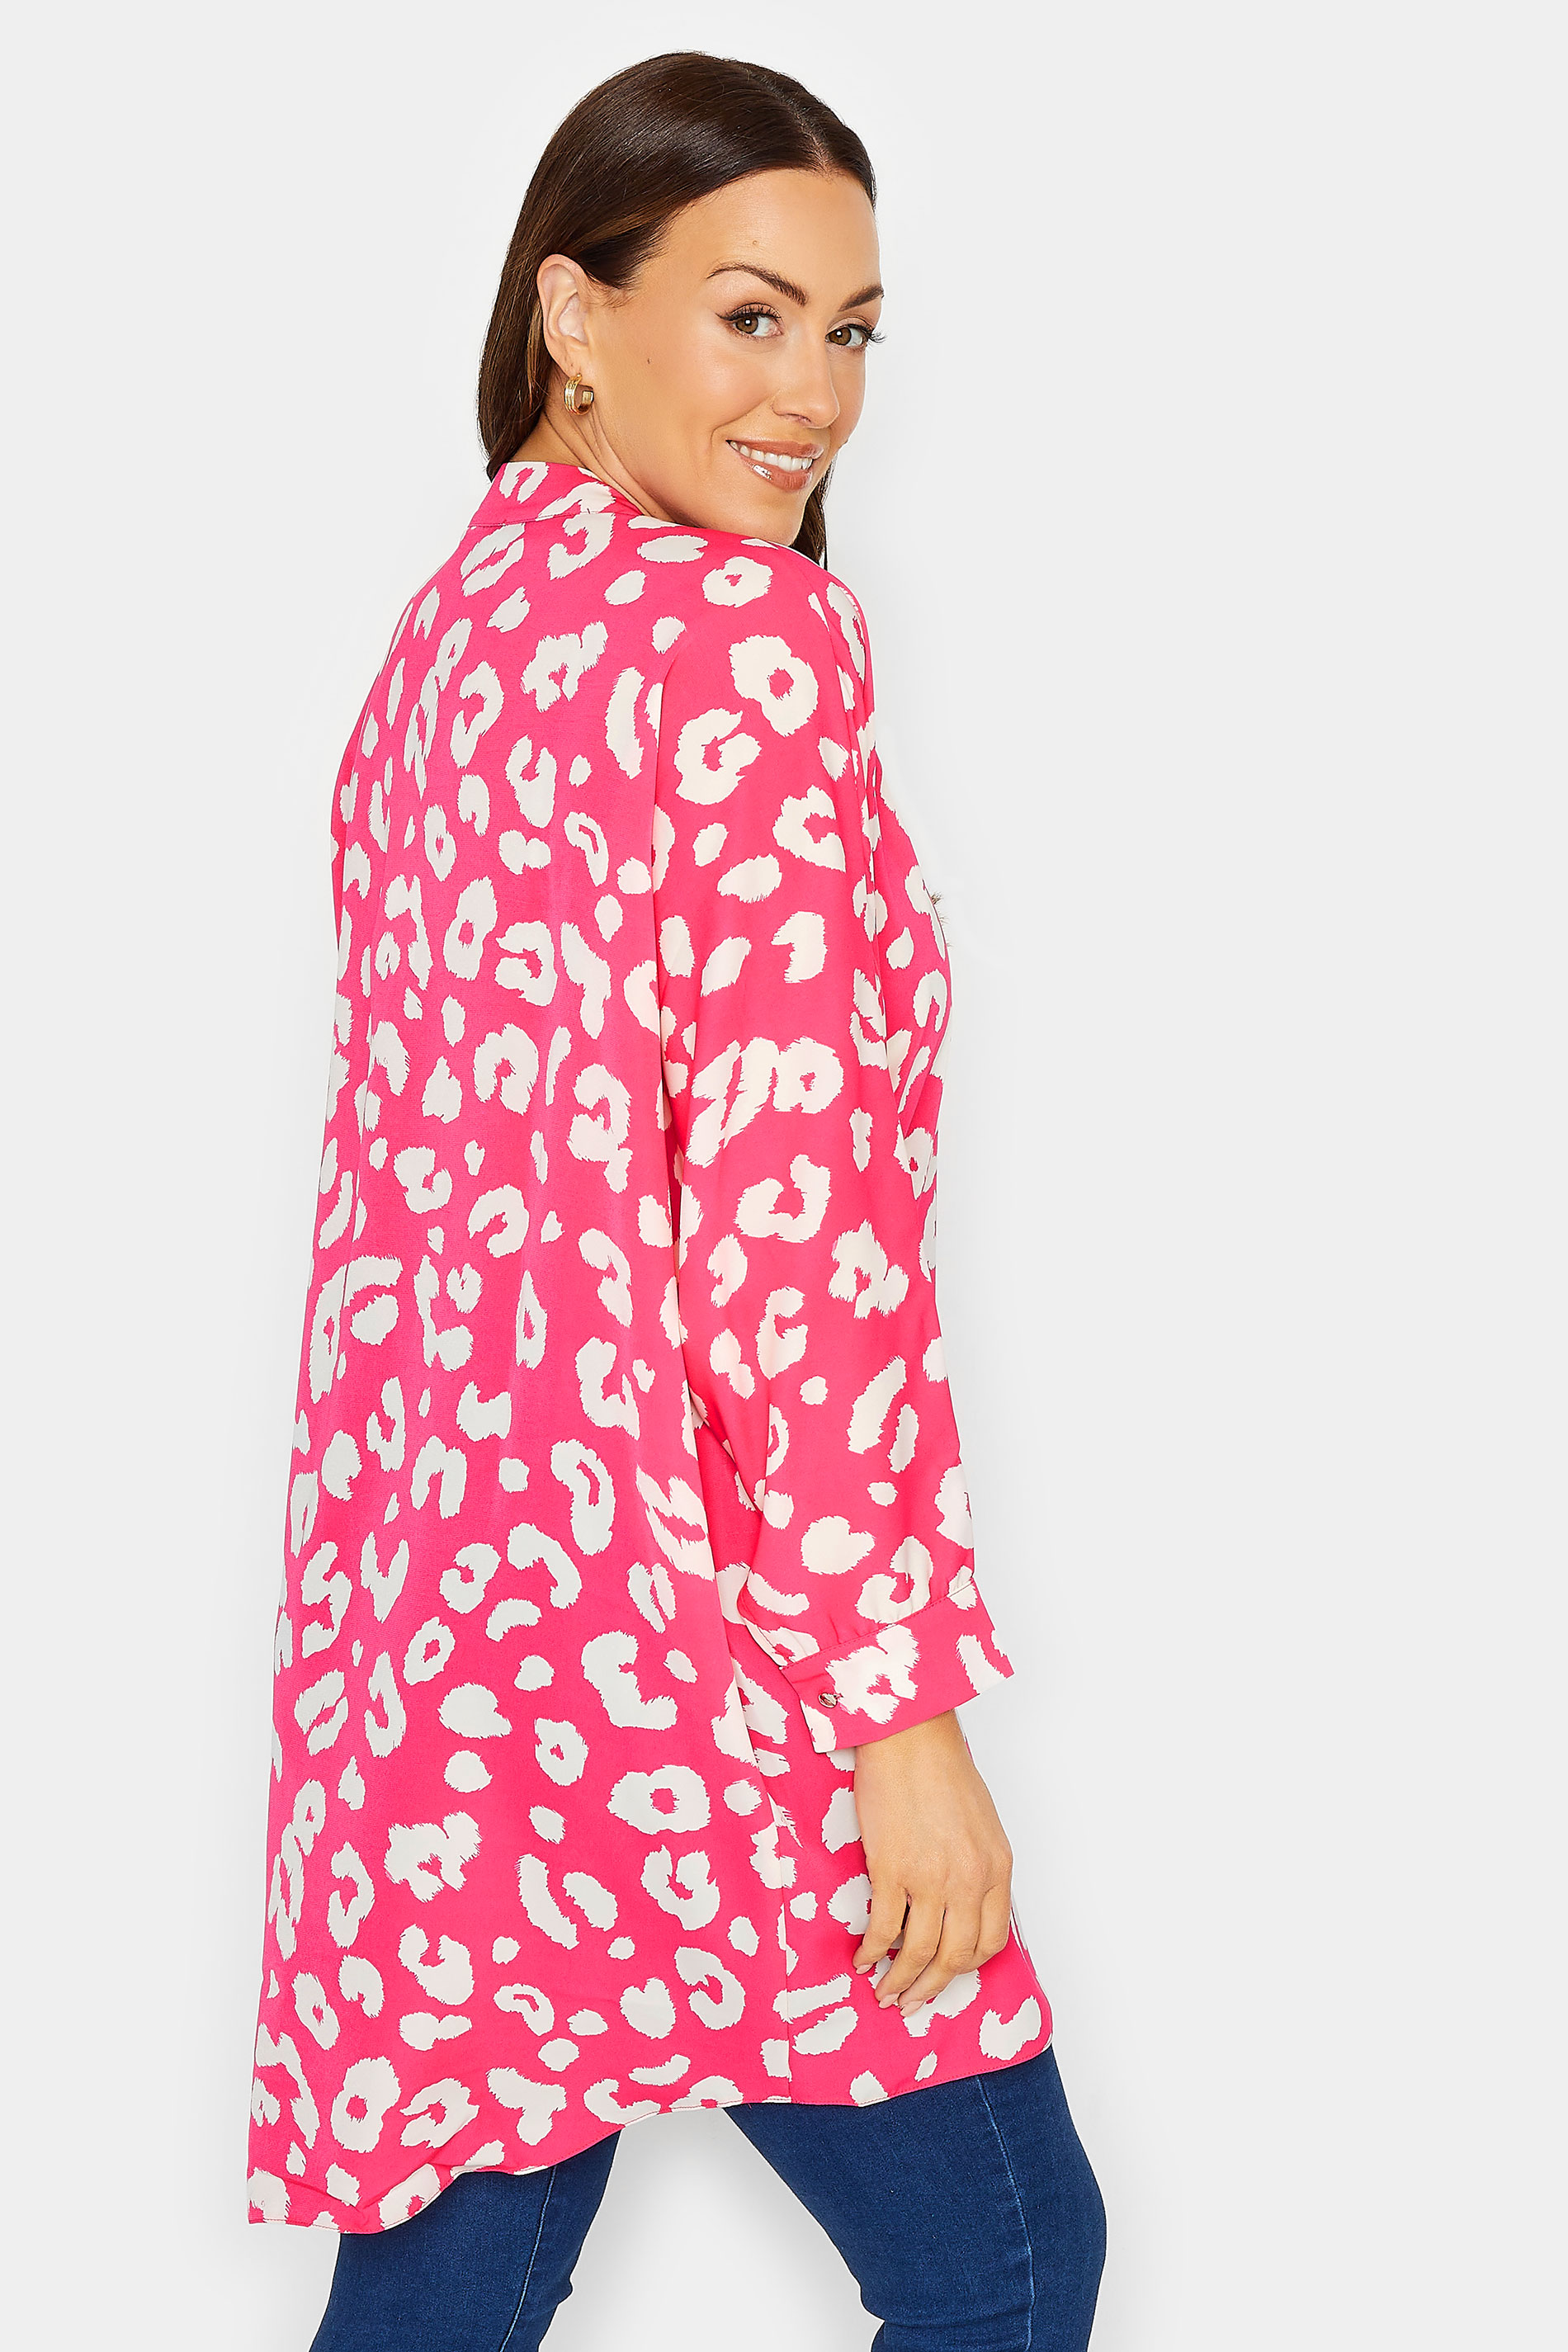 M&Co Pink Leopard Print Blouse | M&Co 3